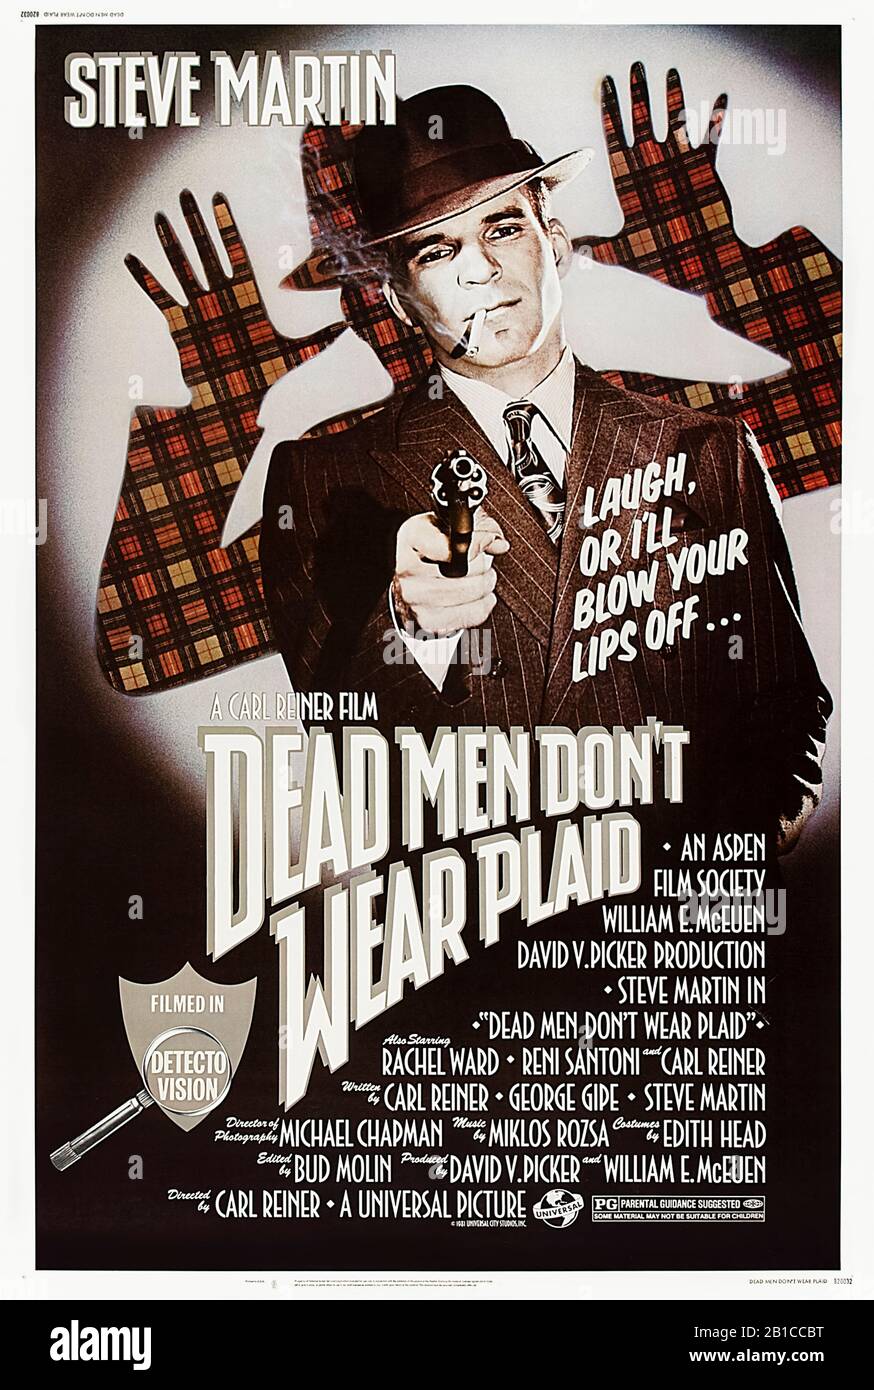 Dead Men Don't Wear Plaid (1982) diretto da Carl Reiner e con Steve Martin, Rachel Ward, Alan Ladd e Carl Reiner. Spool di noir e omaggio incise con scene di classici film noir. Foto Stock